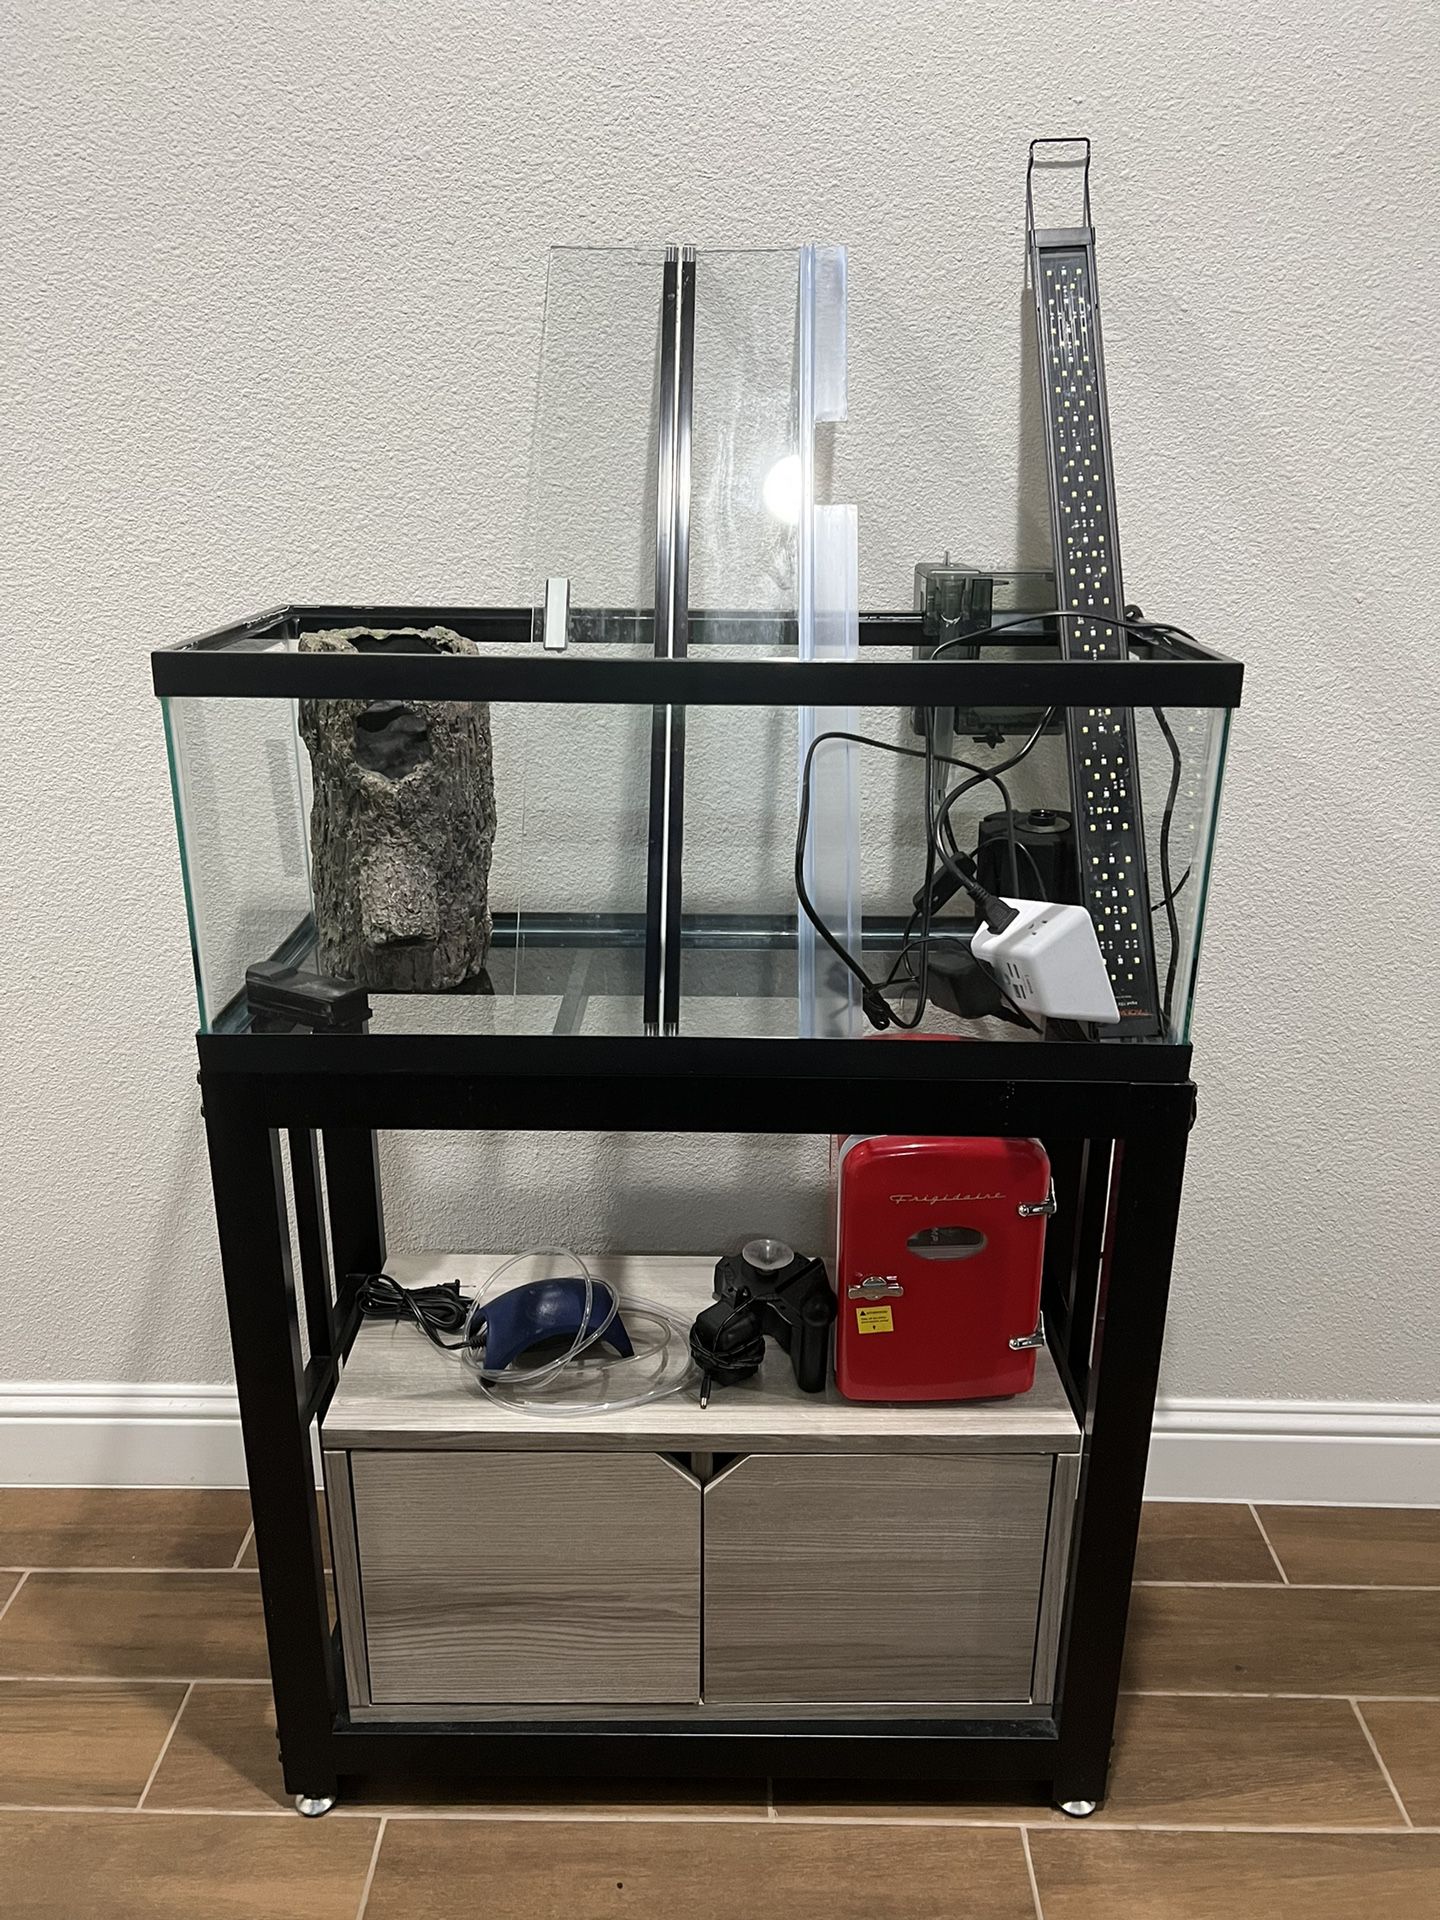 Full Aquarium Setup